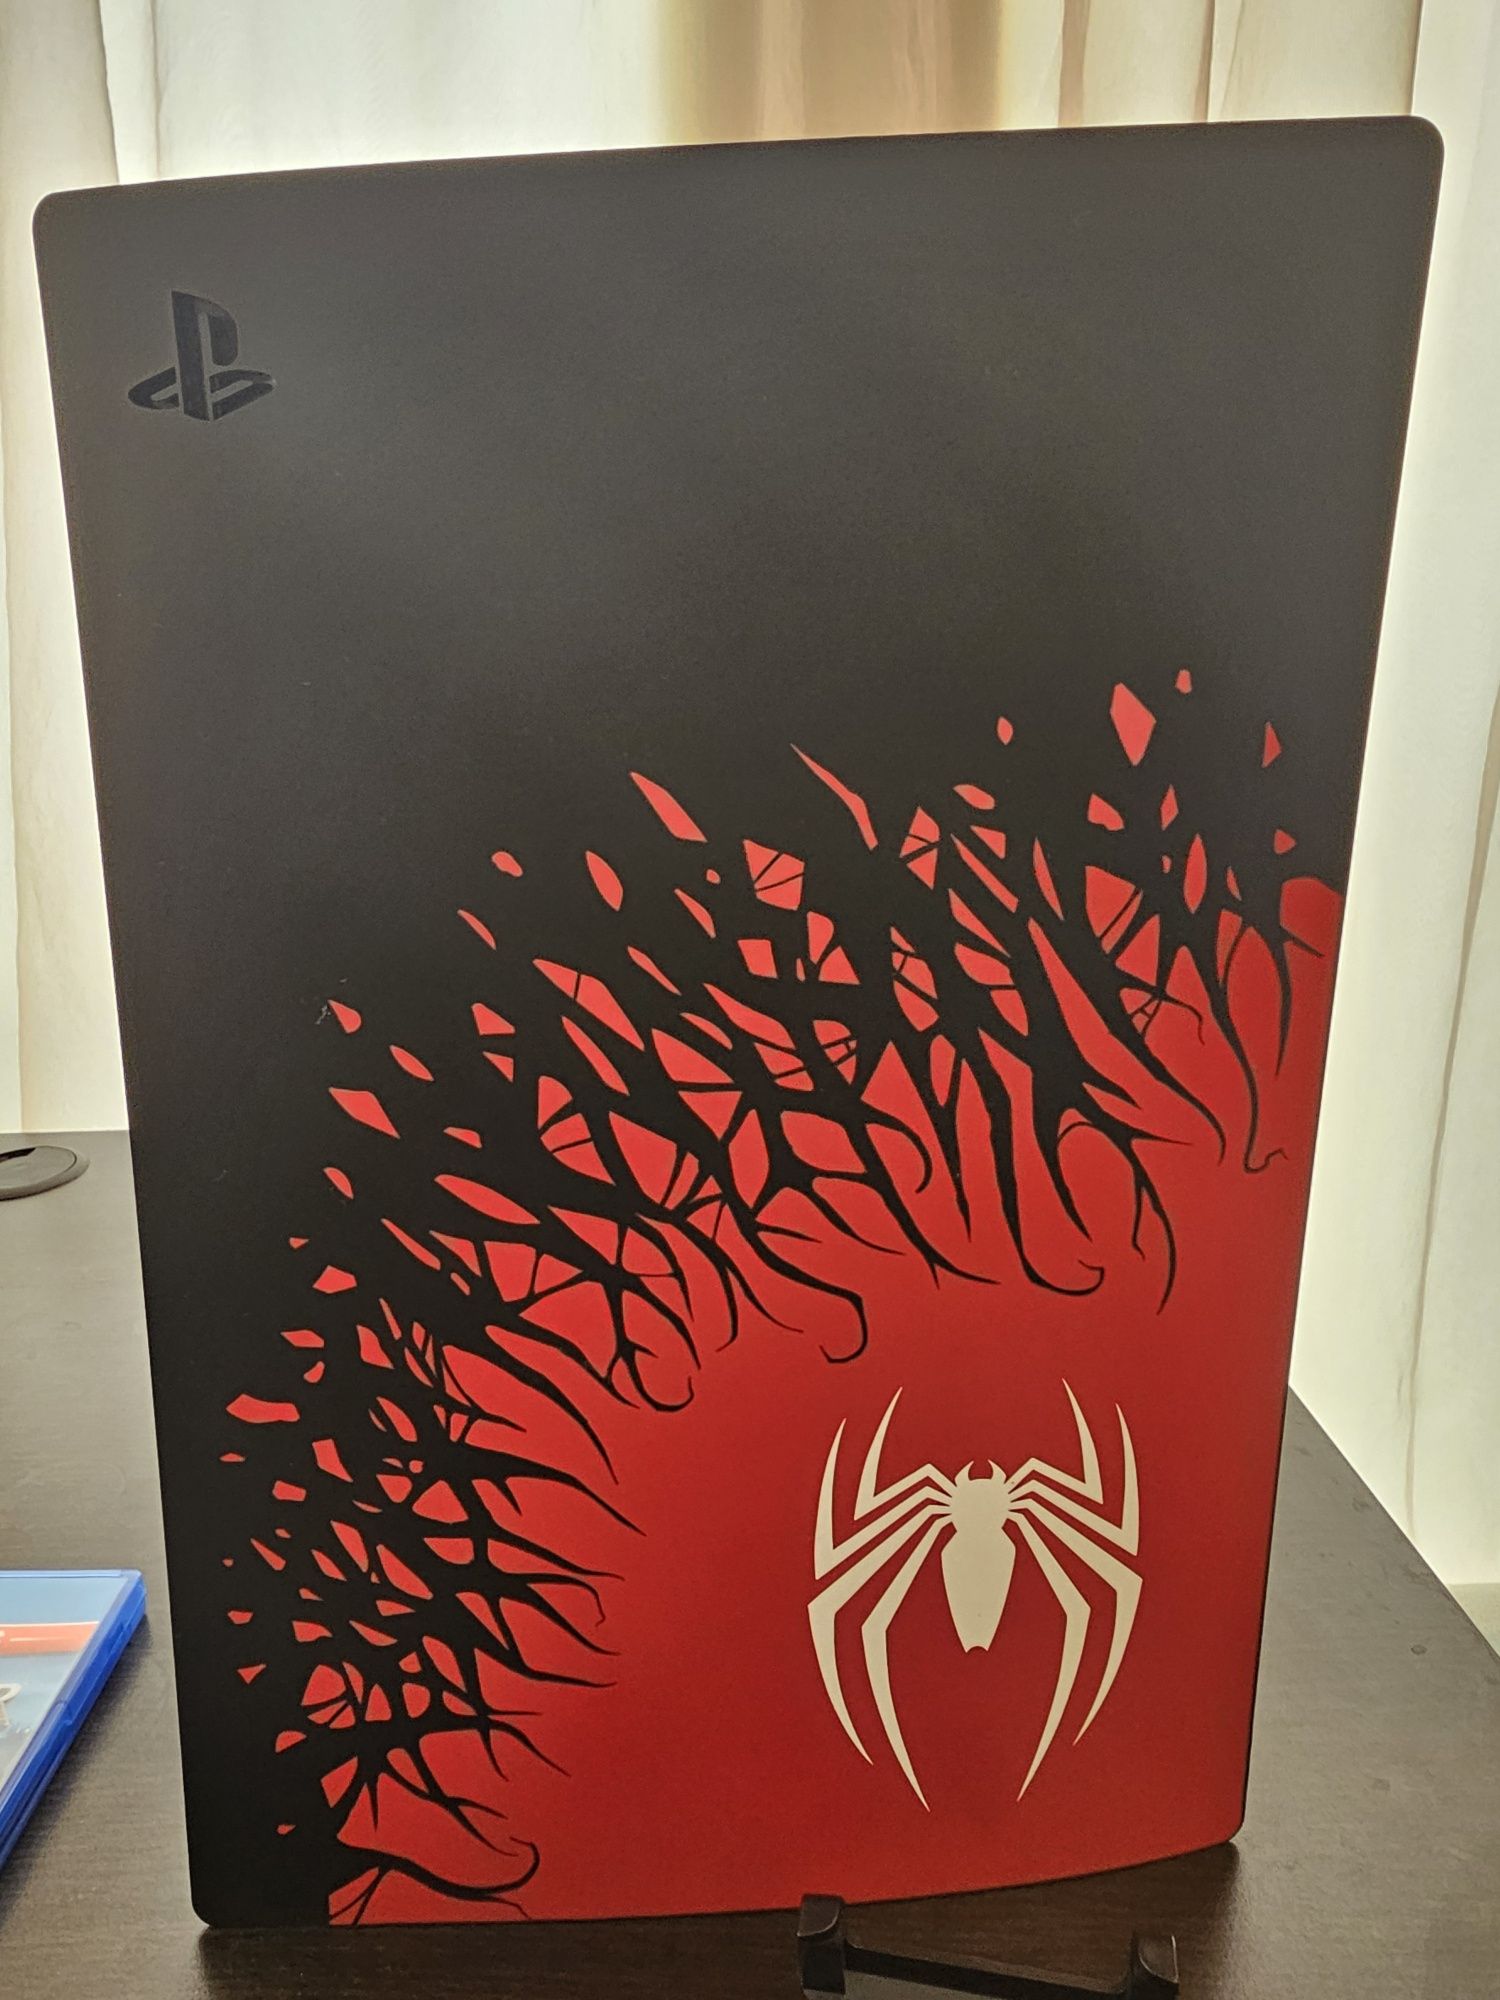 Playstation 5 Spider-man 2 edition